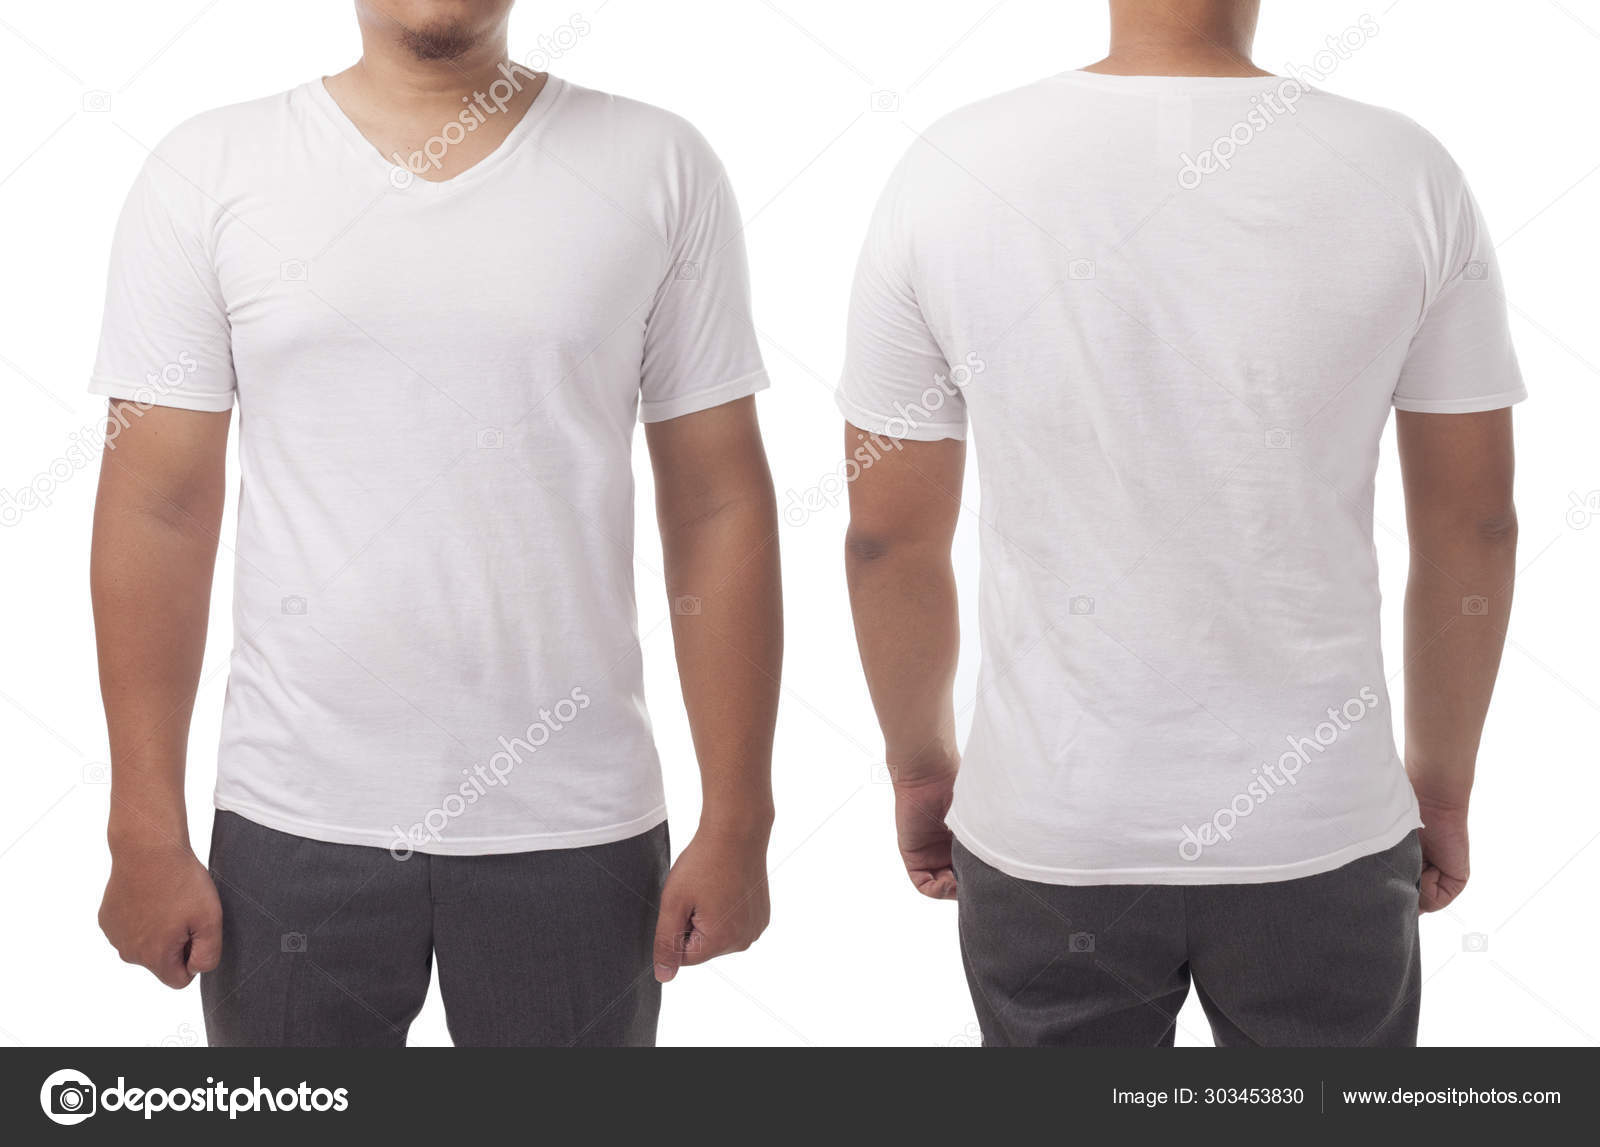 plain white v neck t shirt